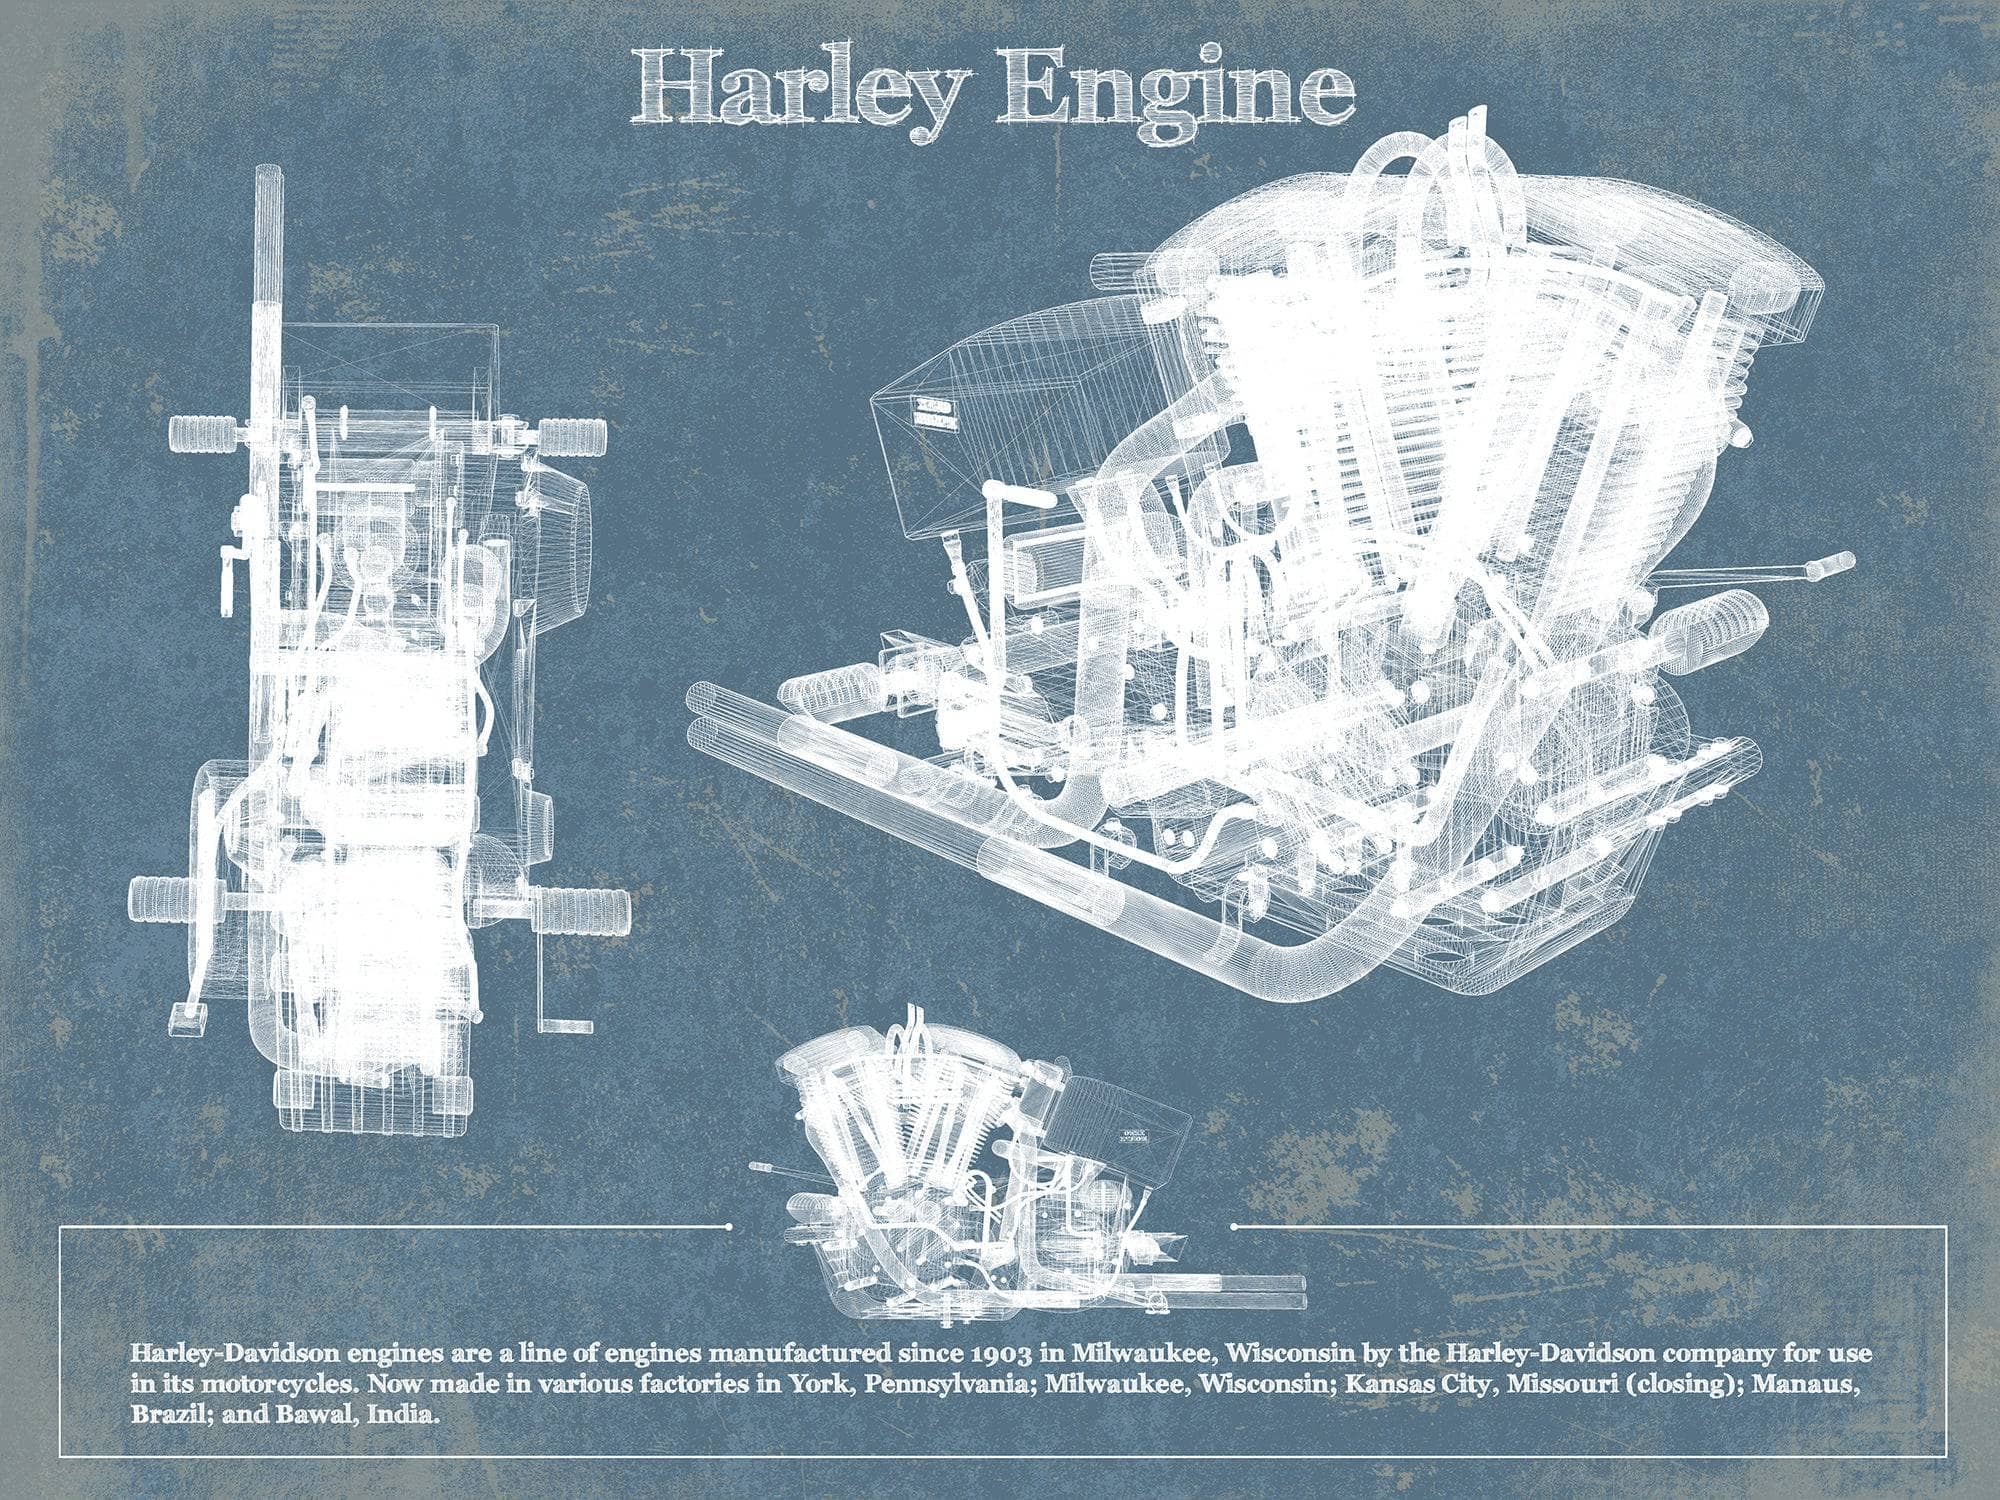 Cutler West 14" x 11" / Unframed Harley-Davidson Engine Vintage Blueprint Motorcycle Engine Patent Print 833110036_18658